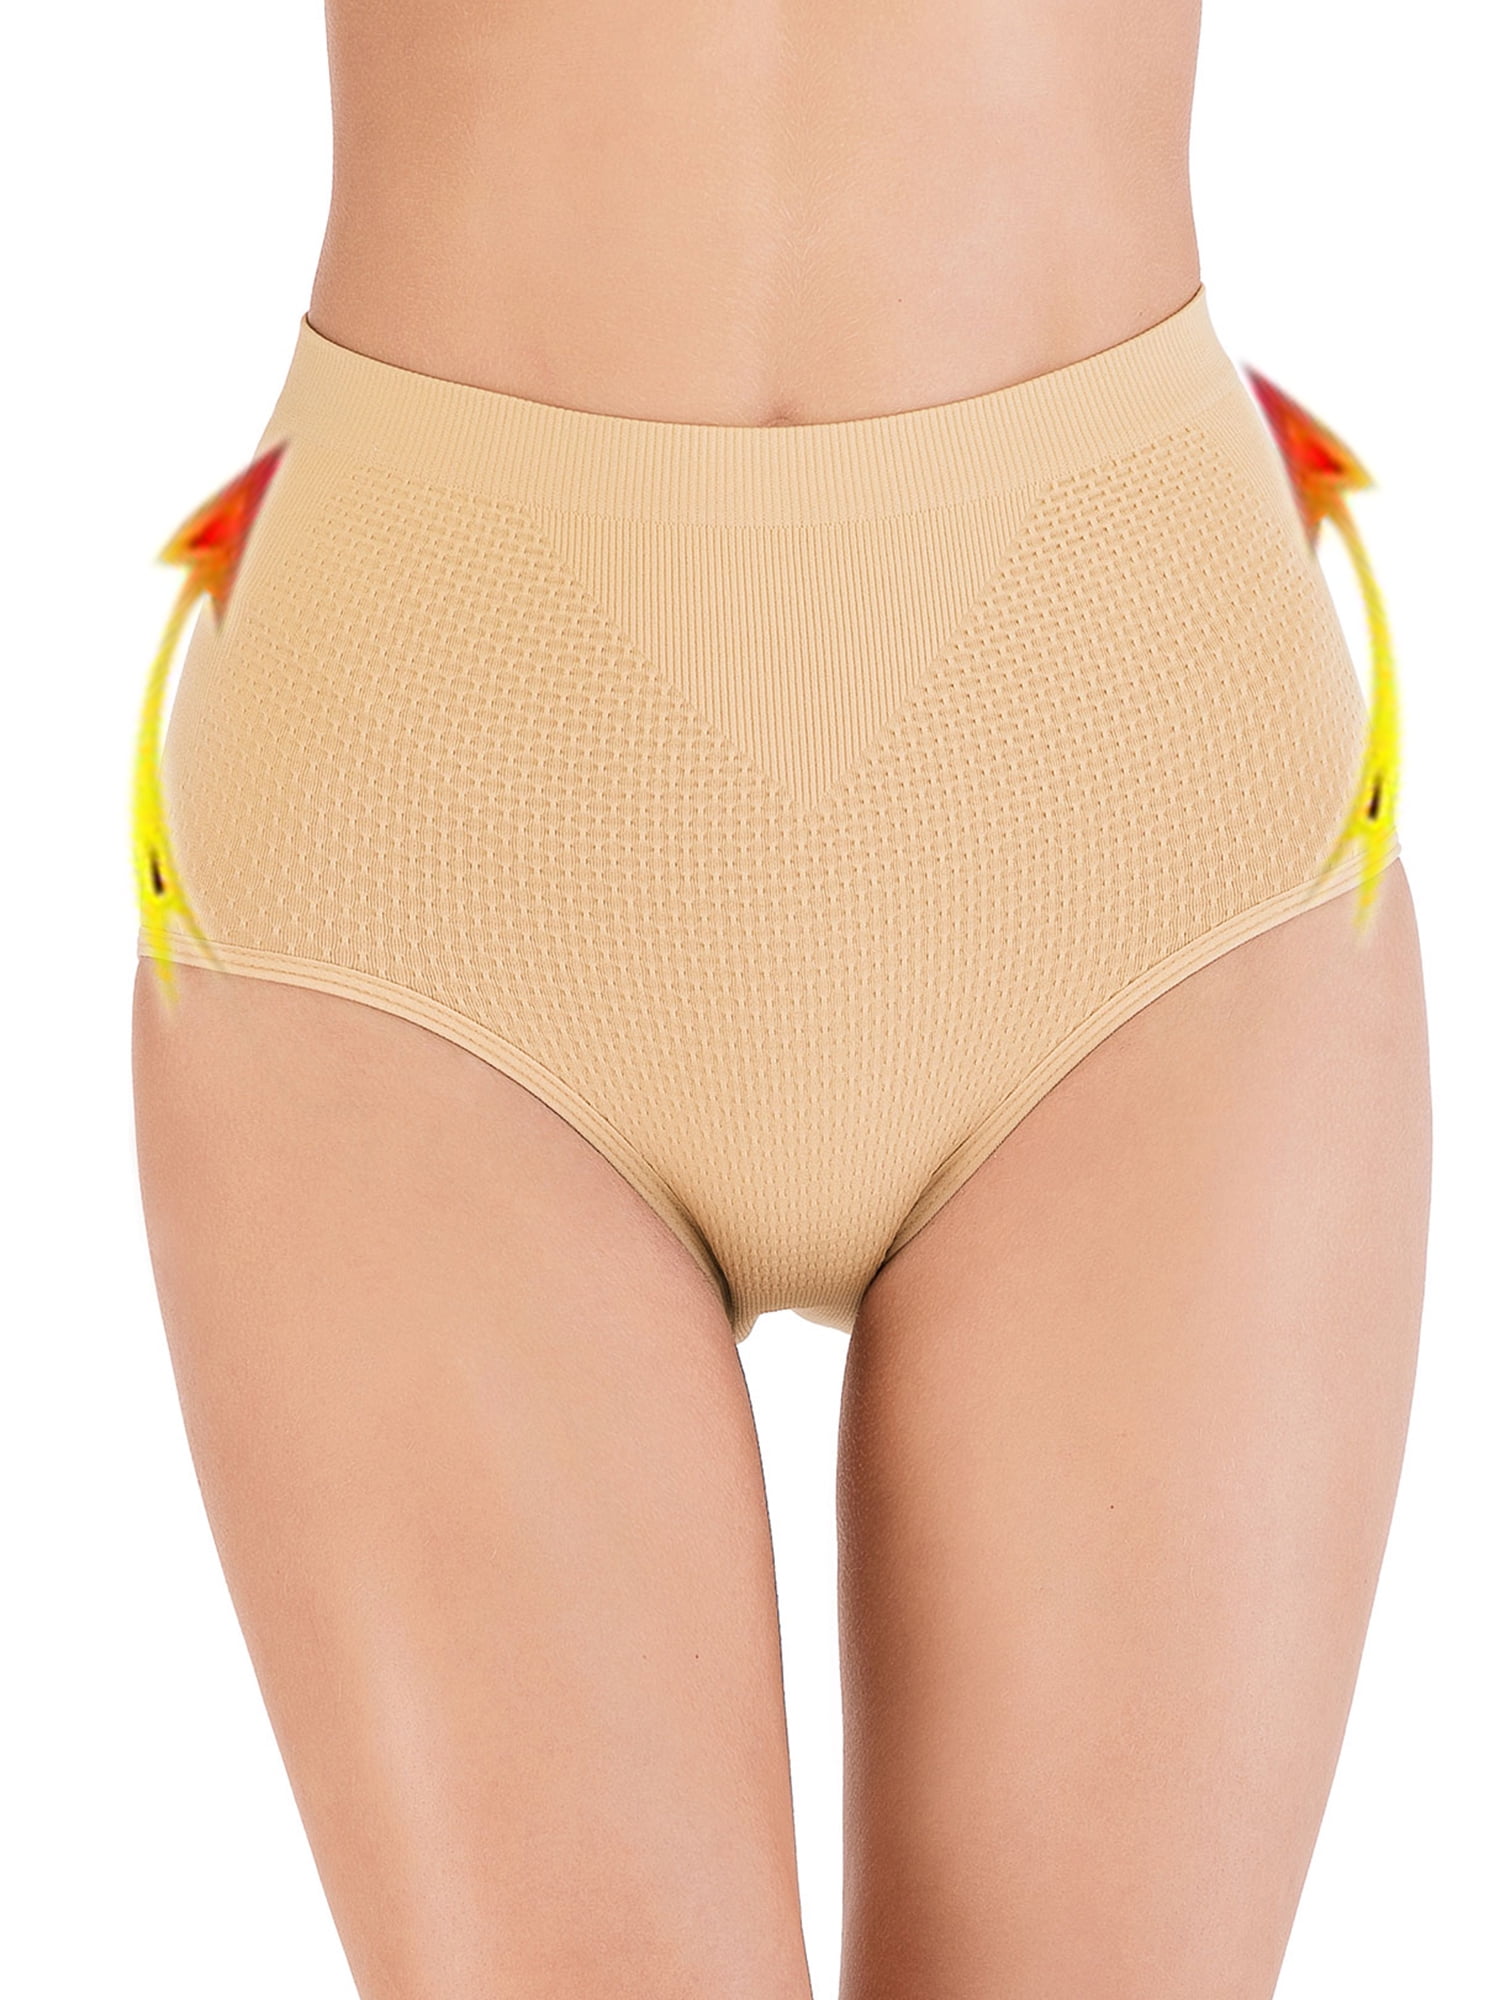 Women Buttock Padded Underwear Shapewear Bum Butt Lift Enhancer Brief  Panties US